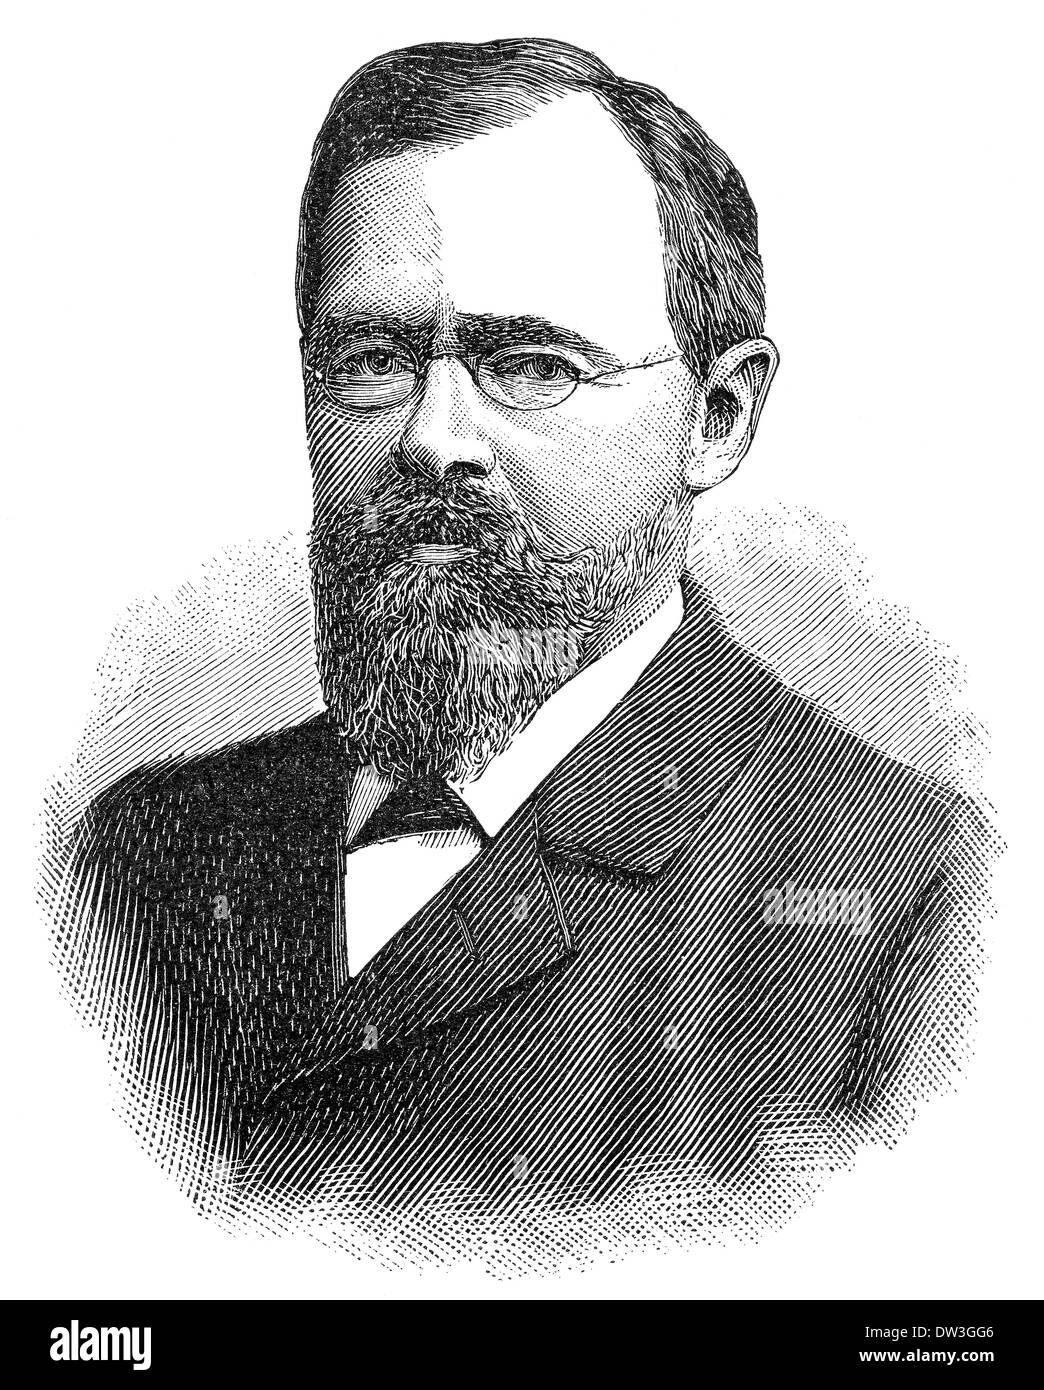 Carl Paul Gottfried Linde, 1842 - 1934, un ingénieur allemand qui a mis au point des technologies de séparation des gaz et de réfrigération Banque D'Images